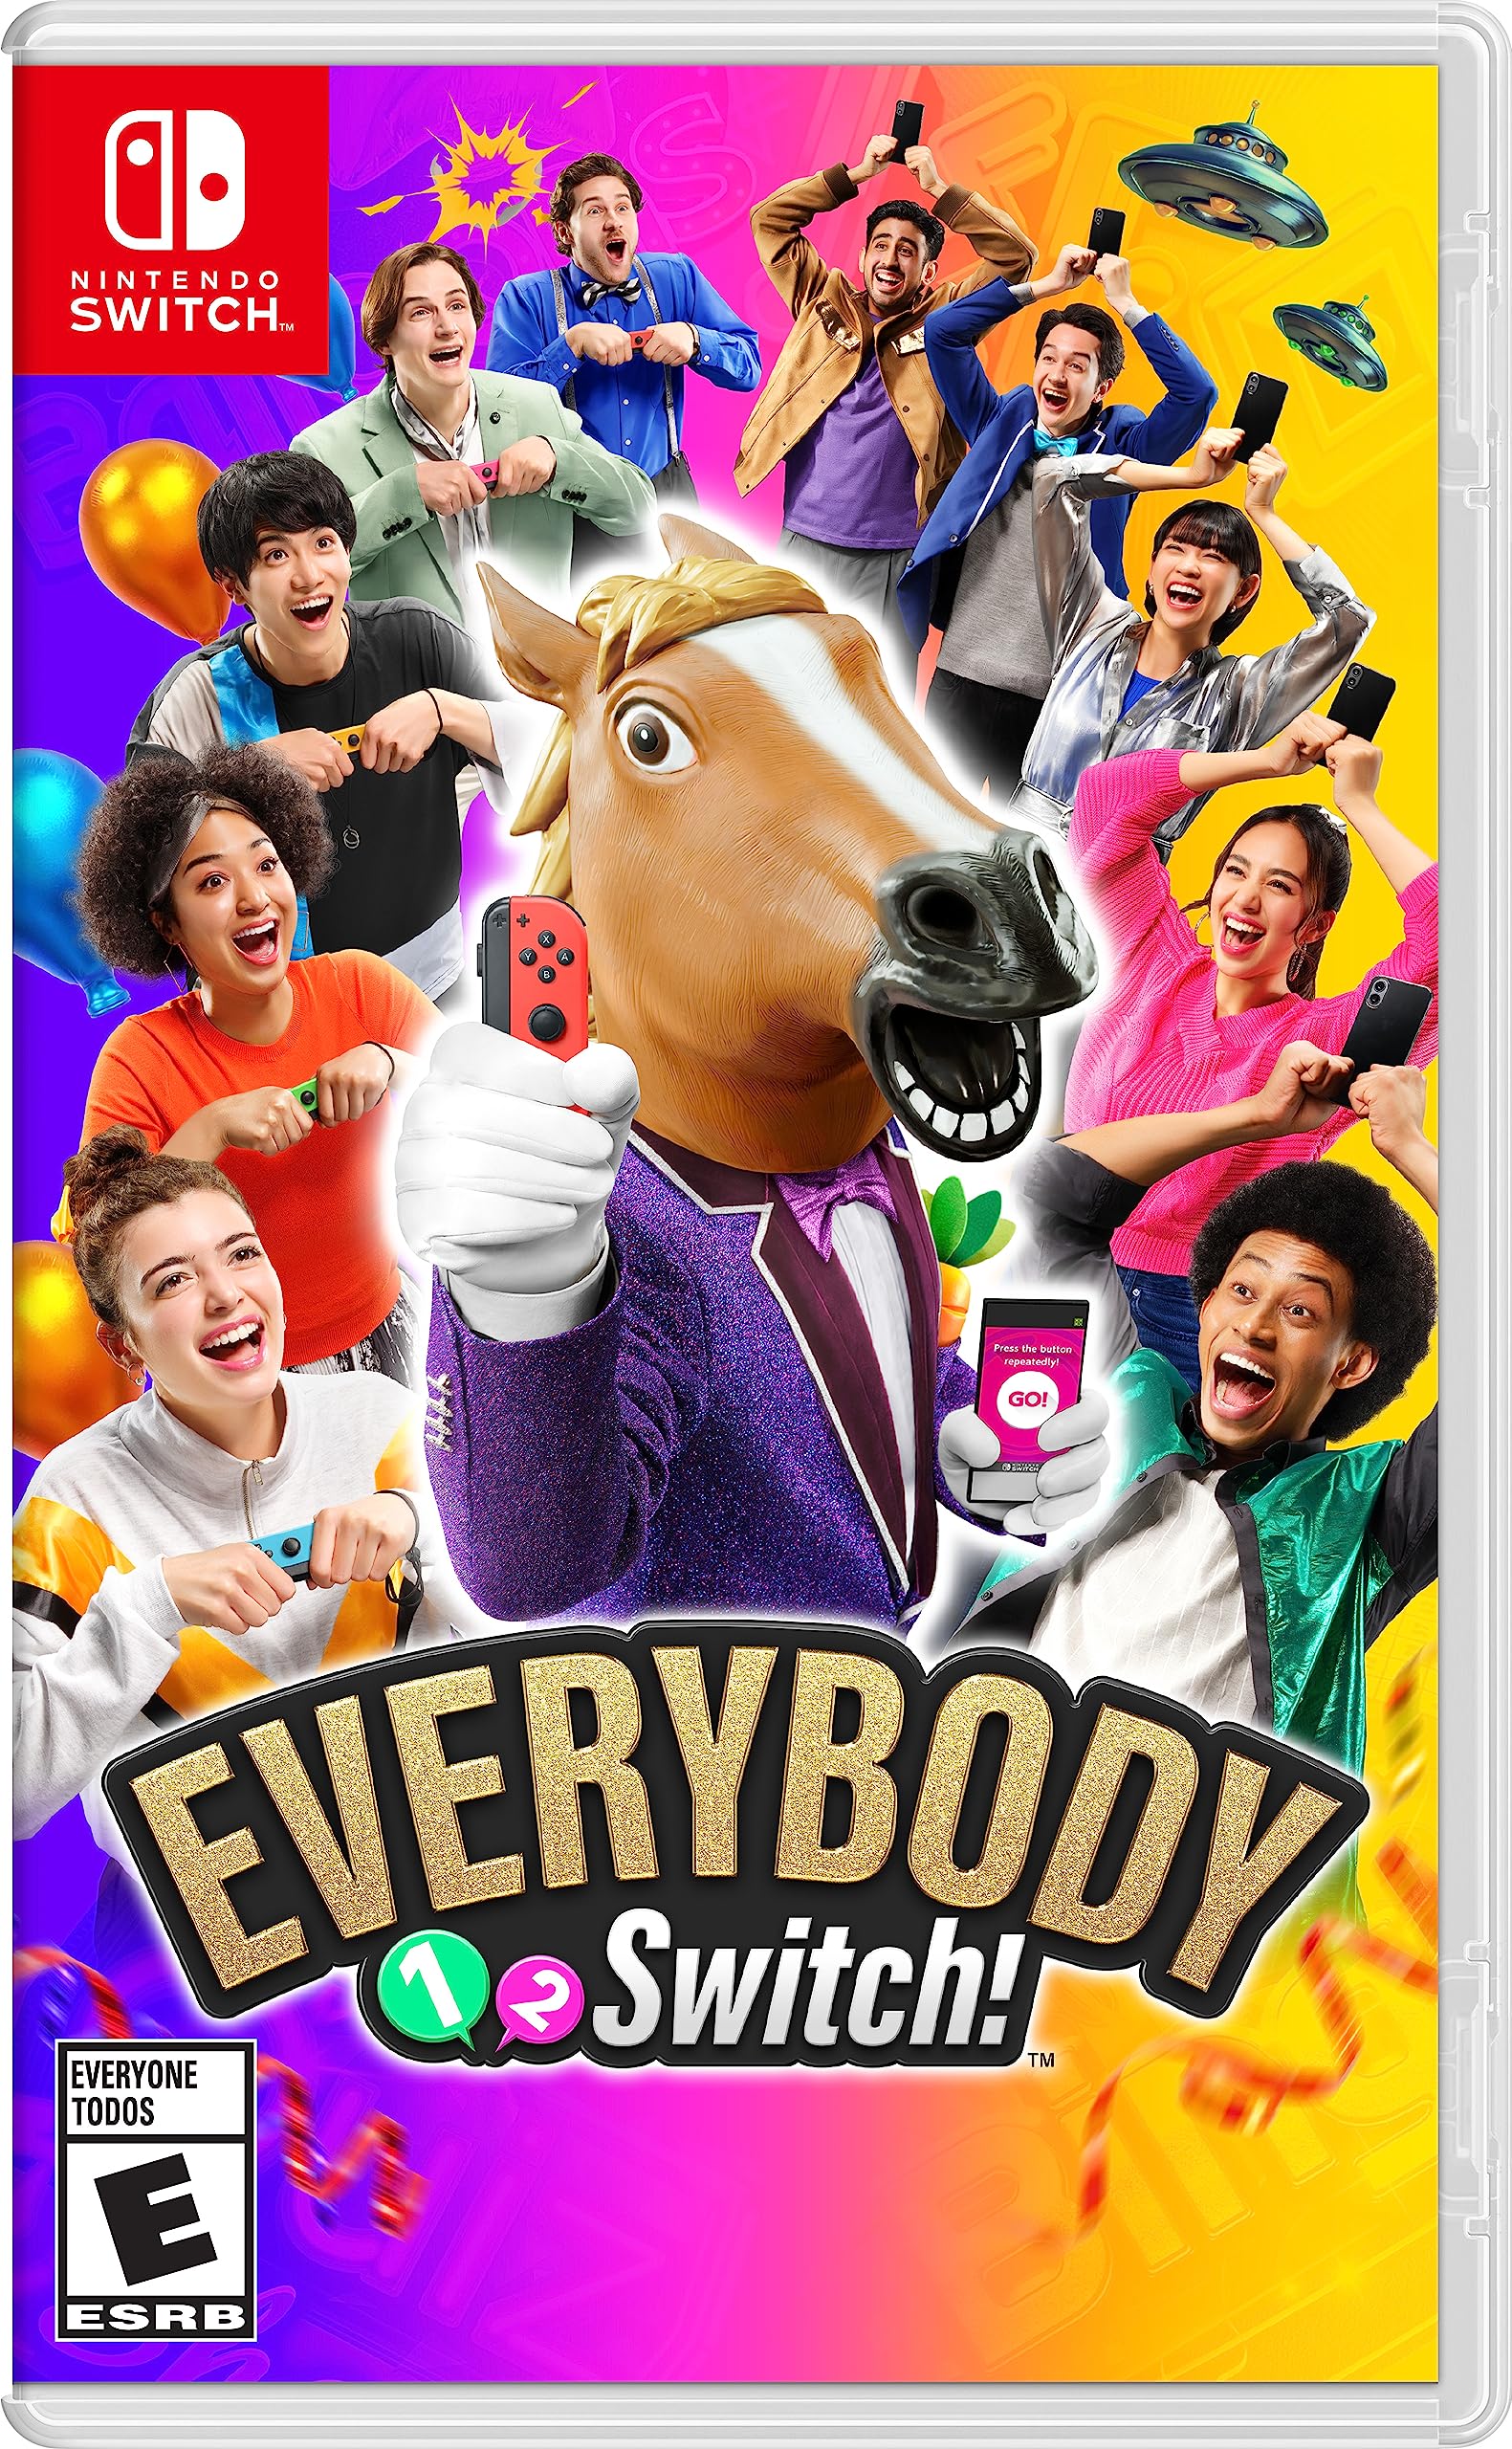 $24.99: Everybody 1-2 Switch! - Nintendo Switch